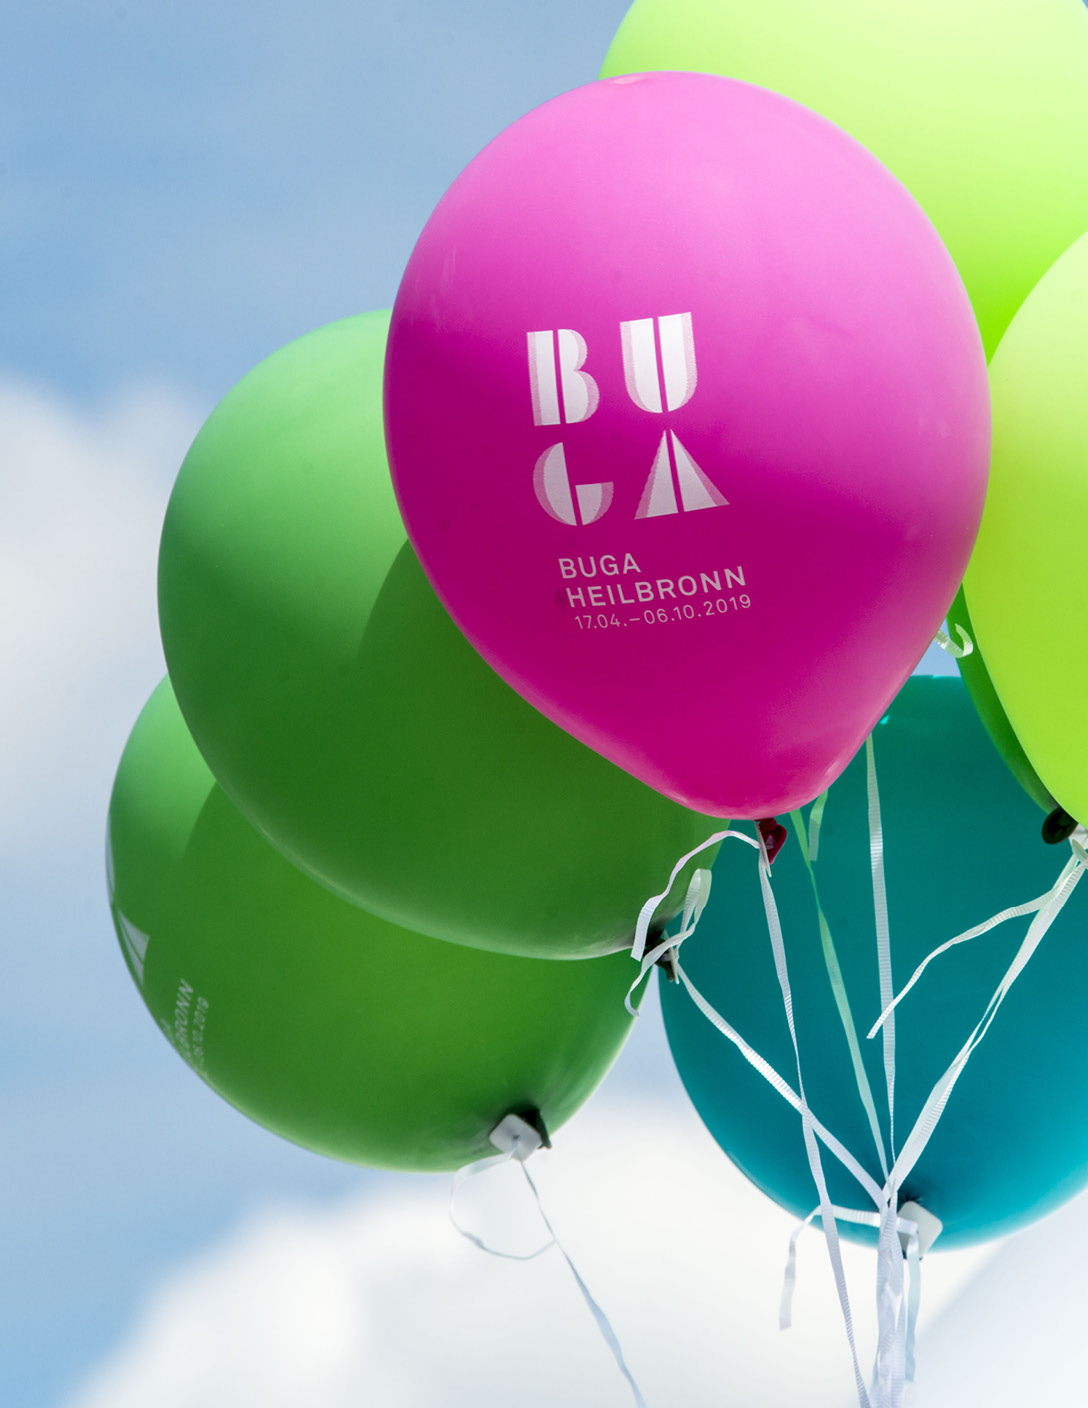 Bundesgartenschau Heilbronn Merchandising Luftballons